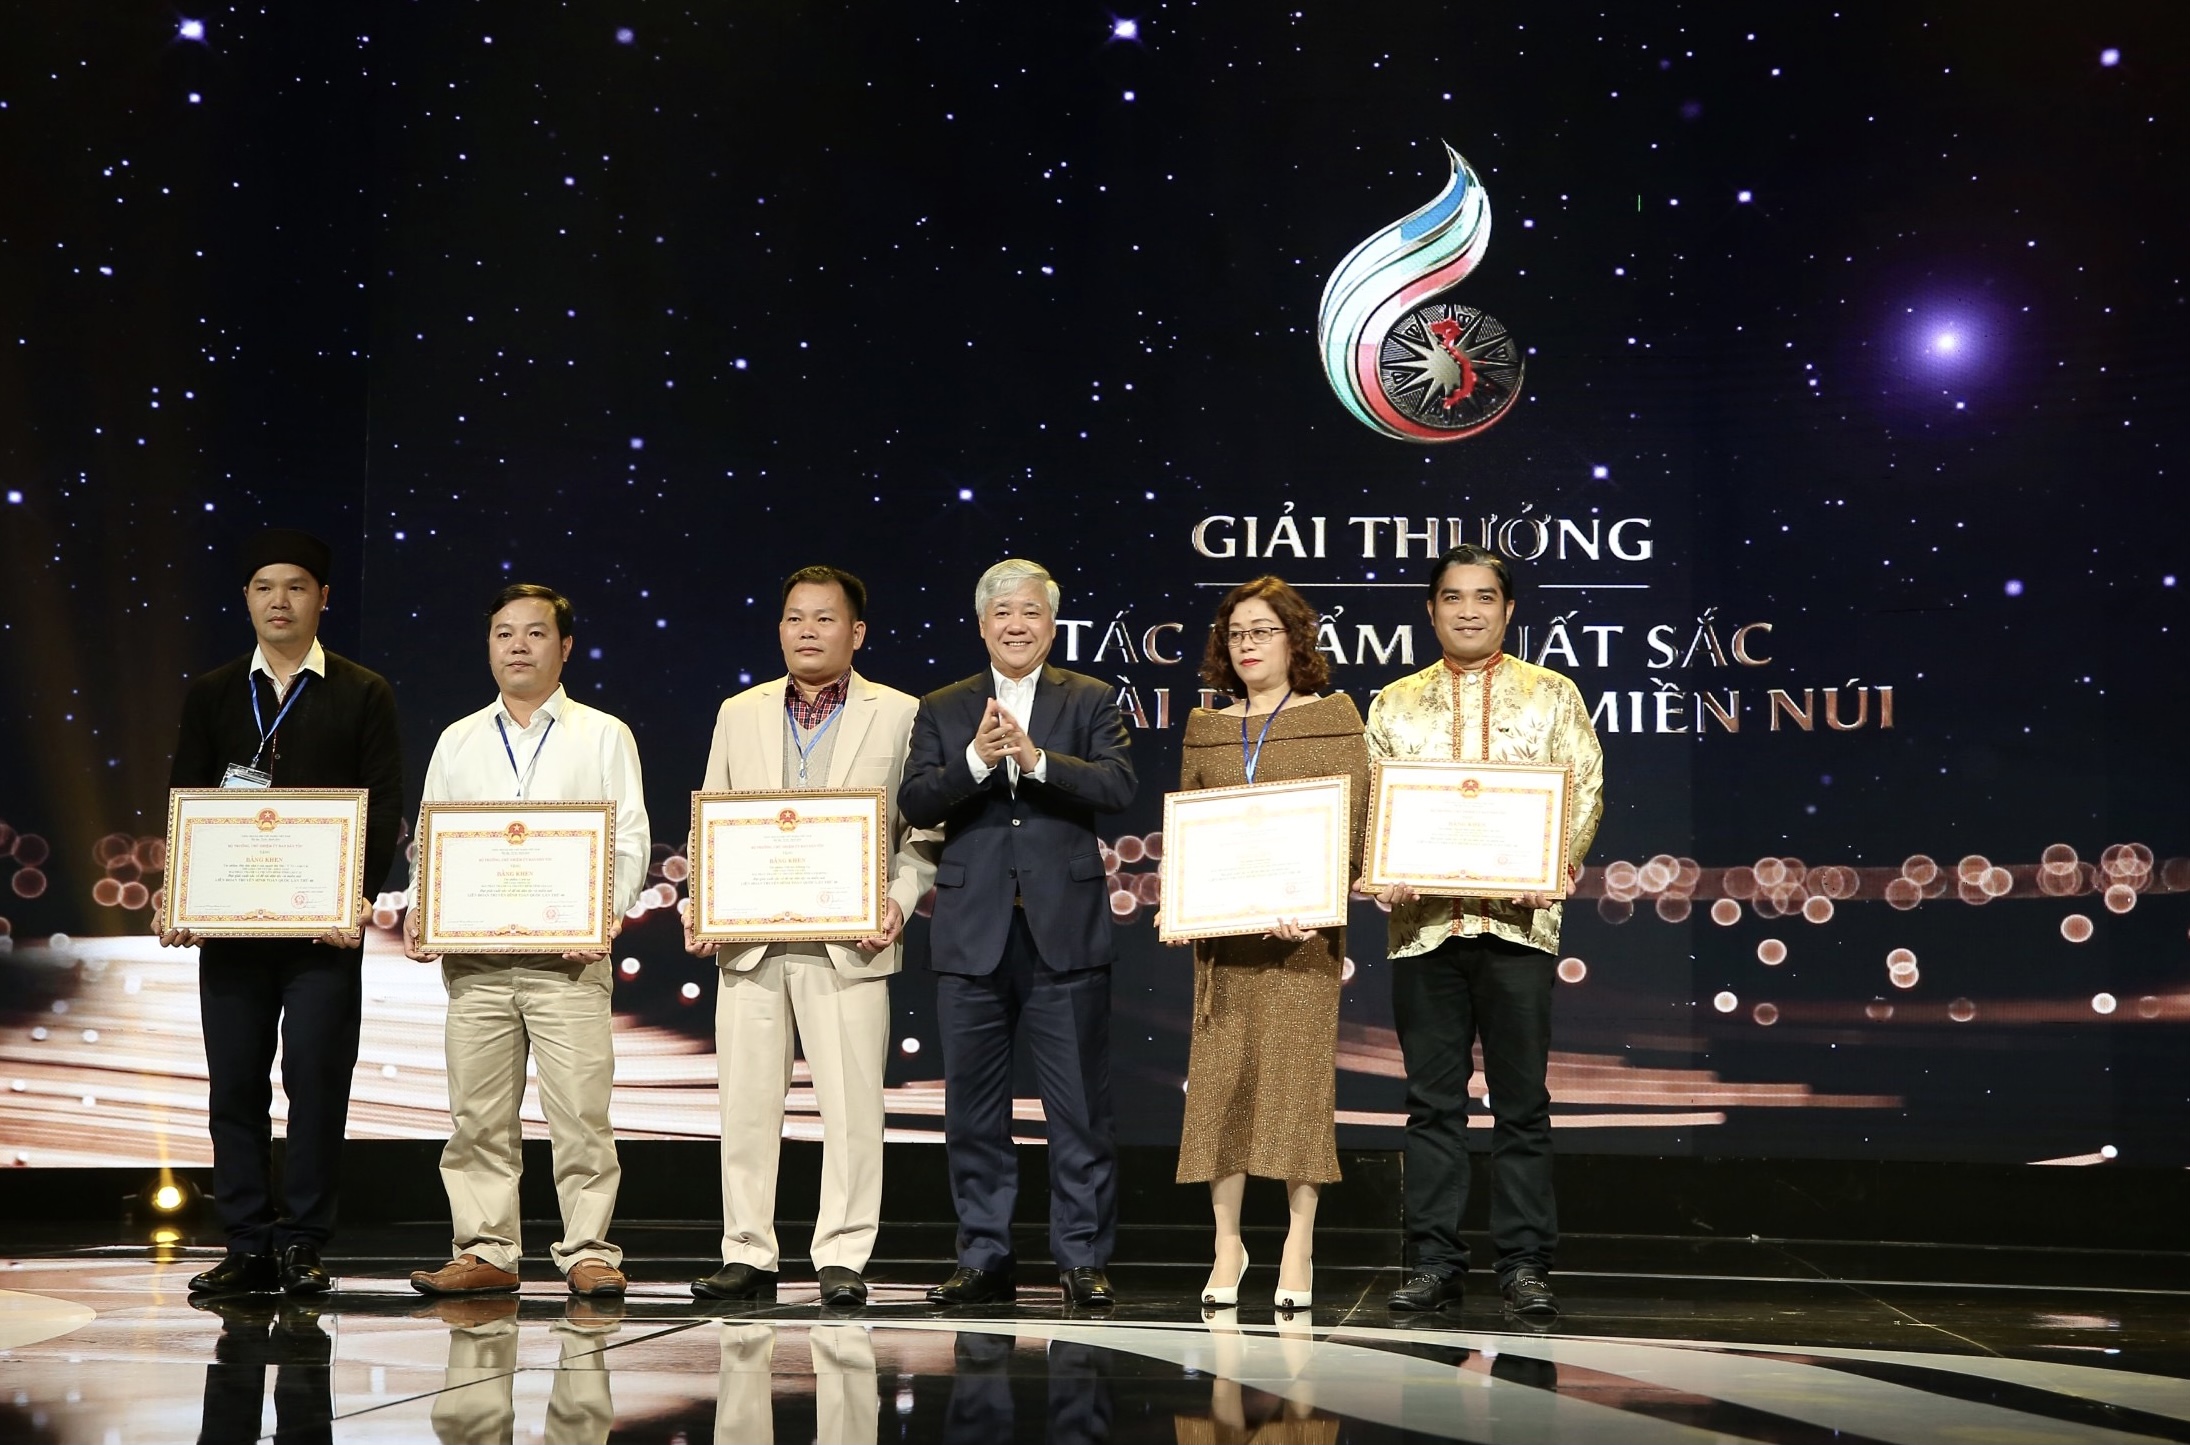 Bộ trưởng, Chủ nhiệm Ủy ban Dân tộc Đỗ Văn Chiến trao giải cho 5 nhóm tác giả đại diện cho các tác giả của 14 tác phẩm đoạt giải về đề tài Dân tộc - Miền núi.